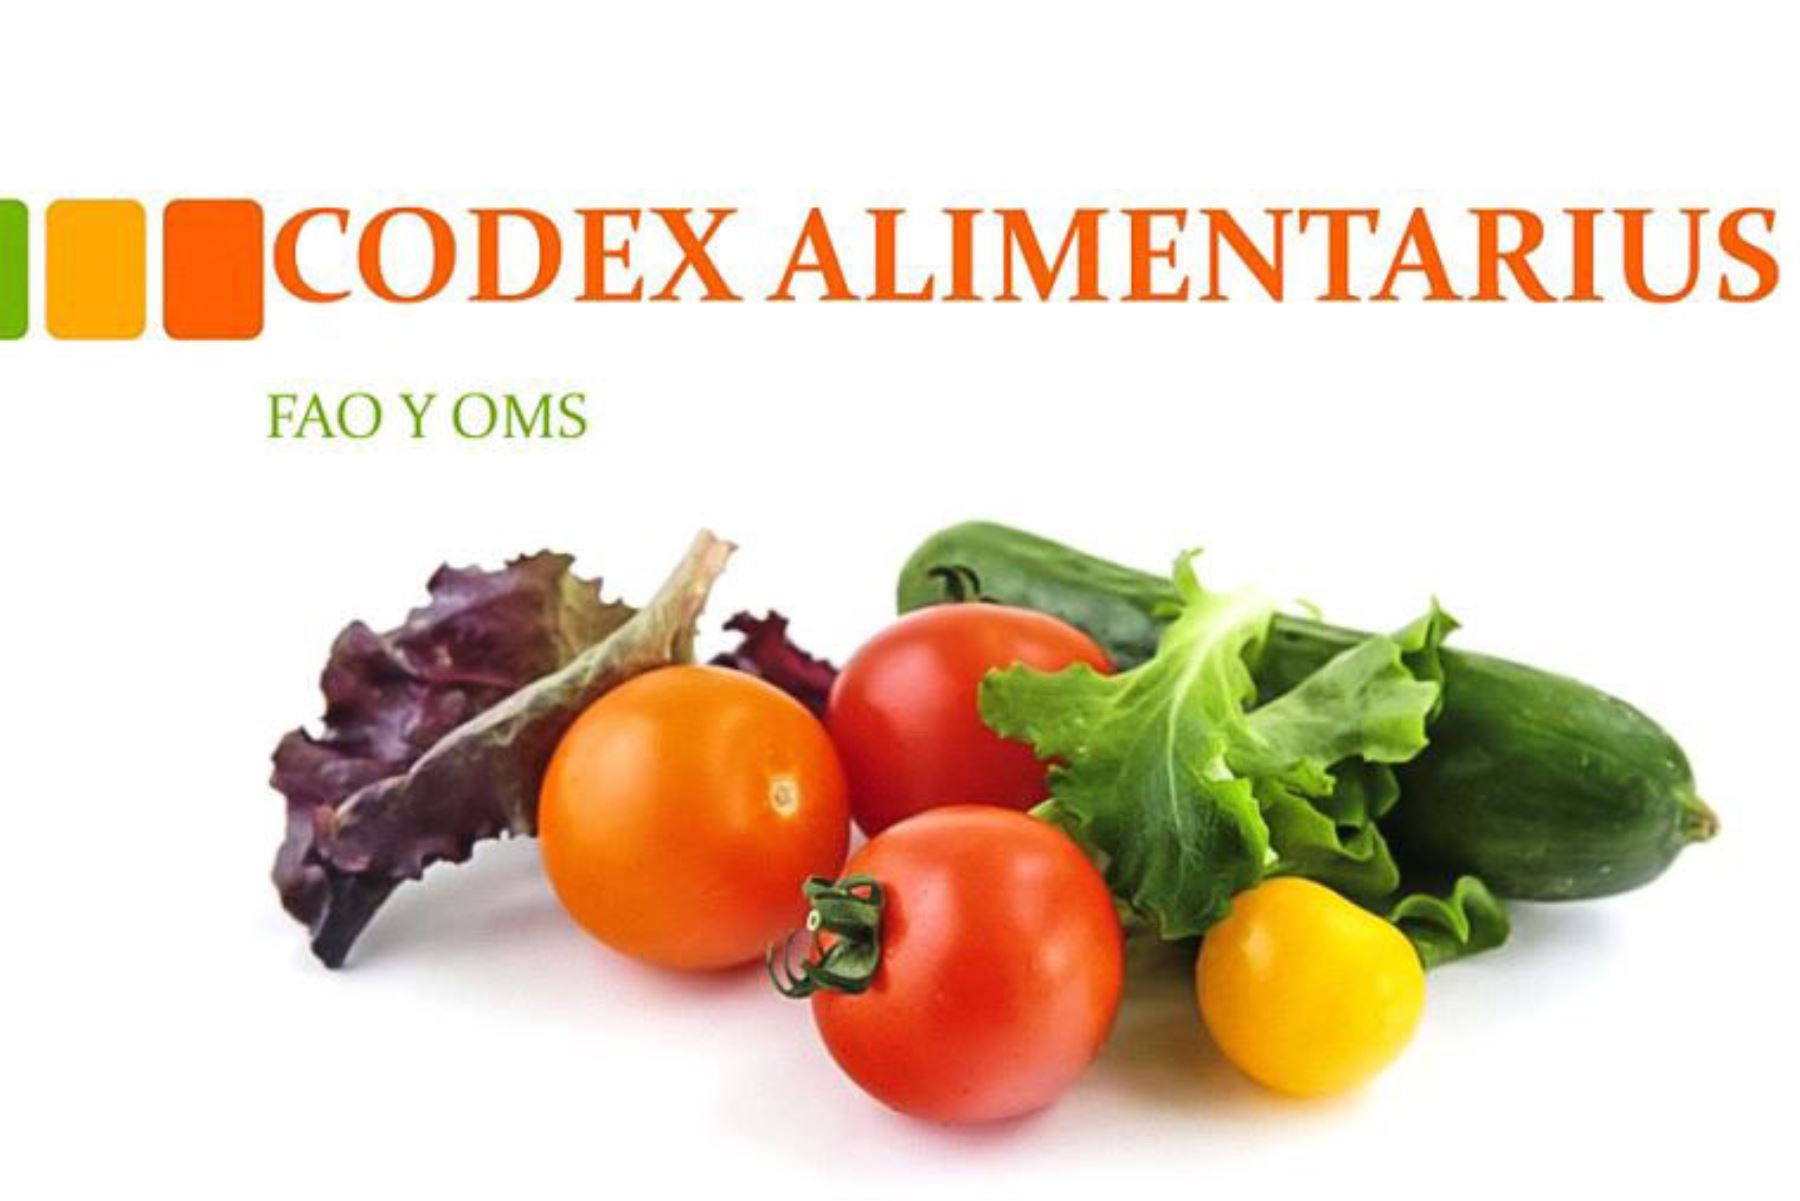 El Codex Alimentarius es una colección de normas alimentarias y textos afines aprobados internacionalmente, encaminados a que los consumidores puedan confiar en que los productos alimentarios que compran son saludables y de calidad; y los importadores sepan que los alimentos que han encargado se ajustan a sus especificaciones. ANDINA/ Andina